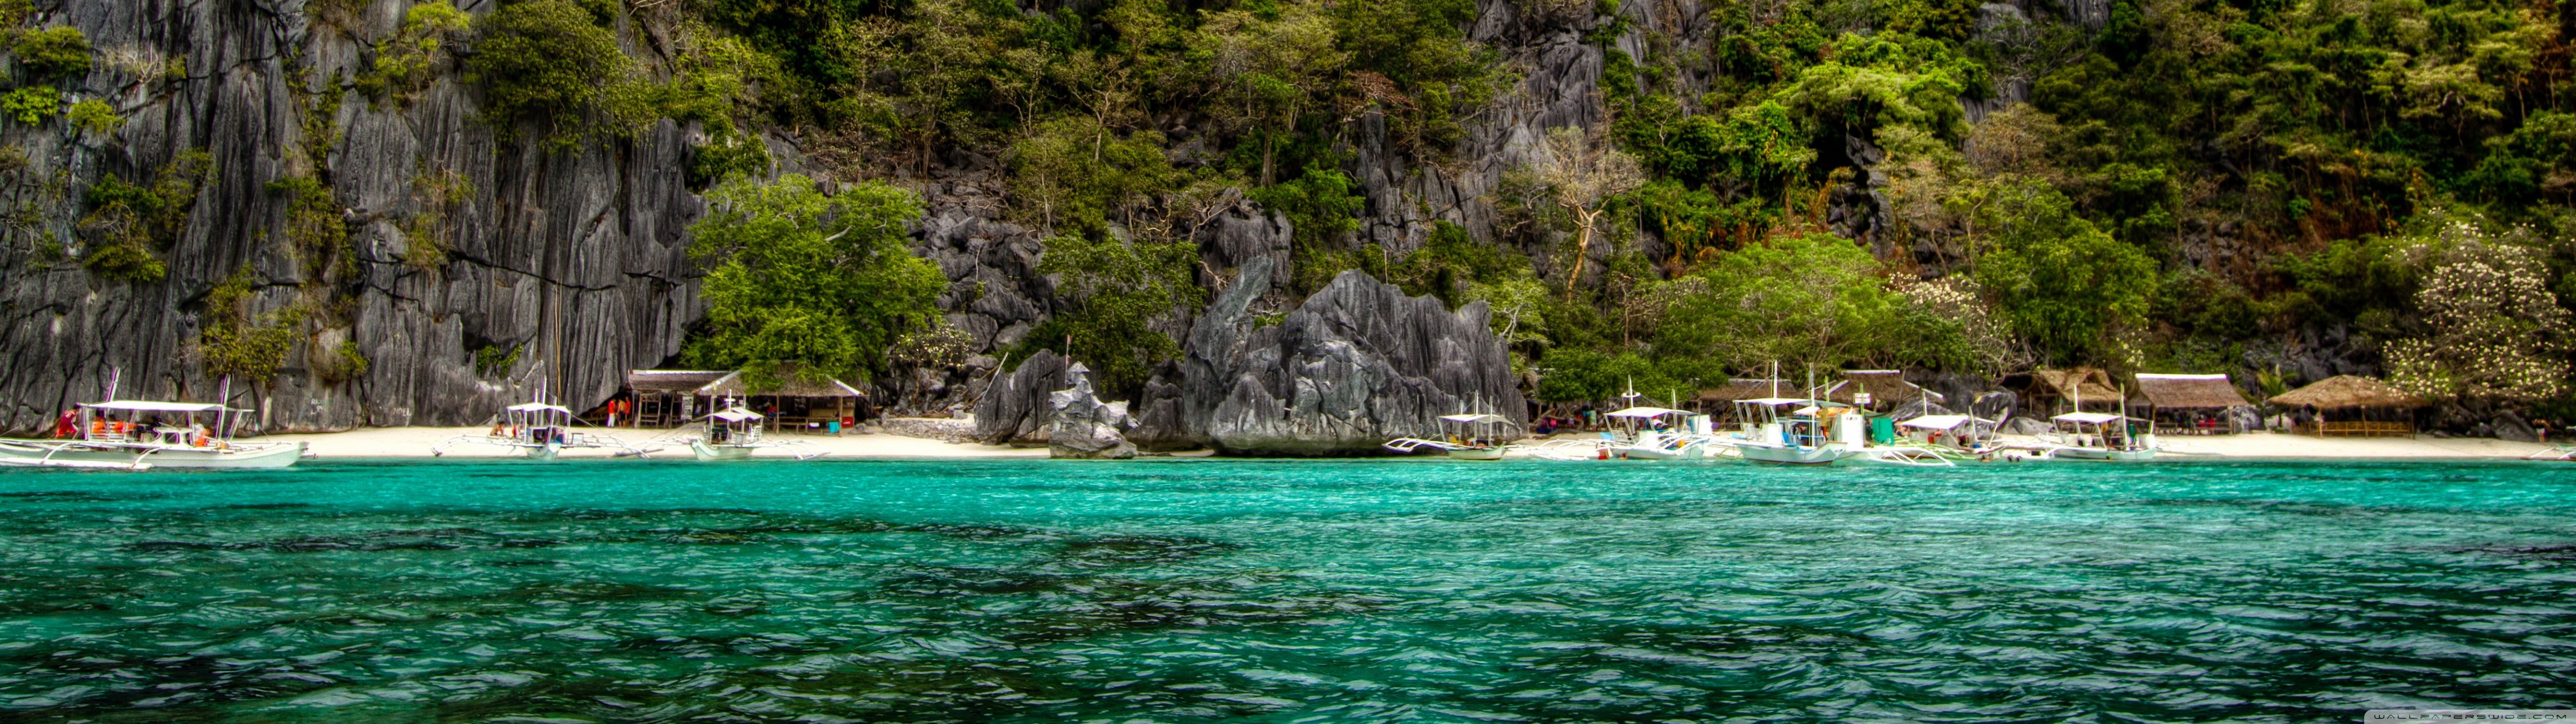 Beach, Palawan, Philippines Ultra HD Desktop Background Wallpaper